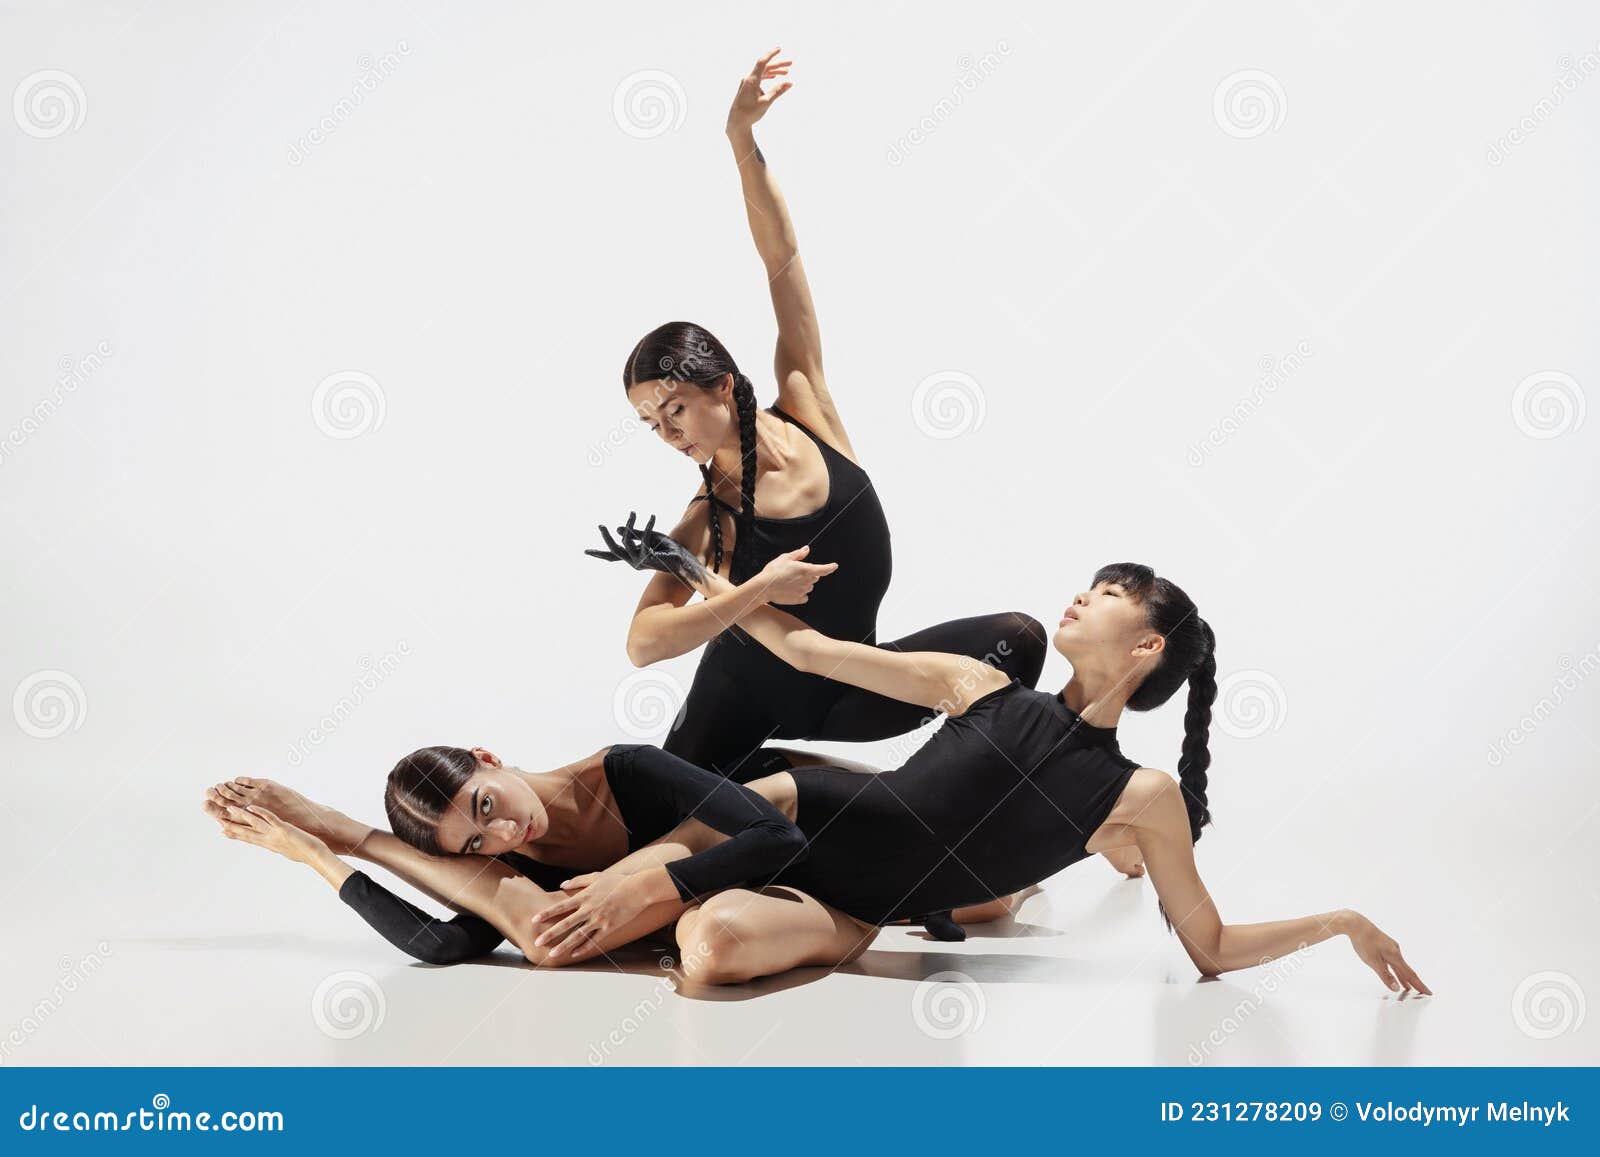 Premium Photo | Three female contemporary dance performers poses in studio